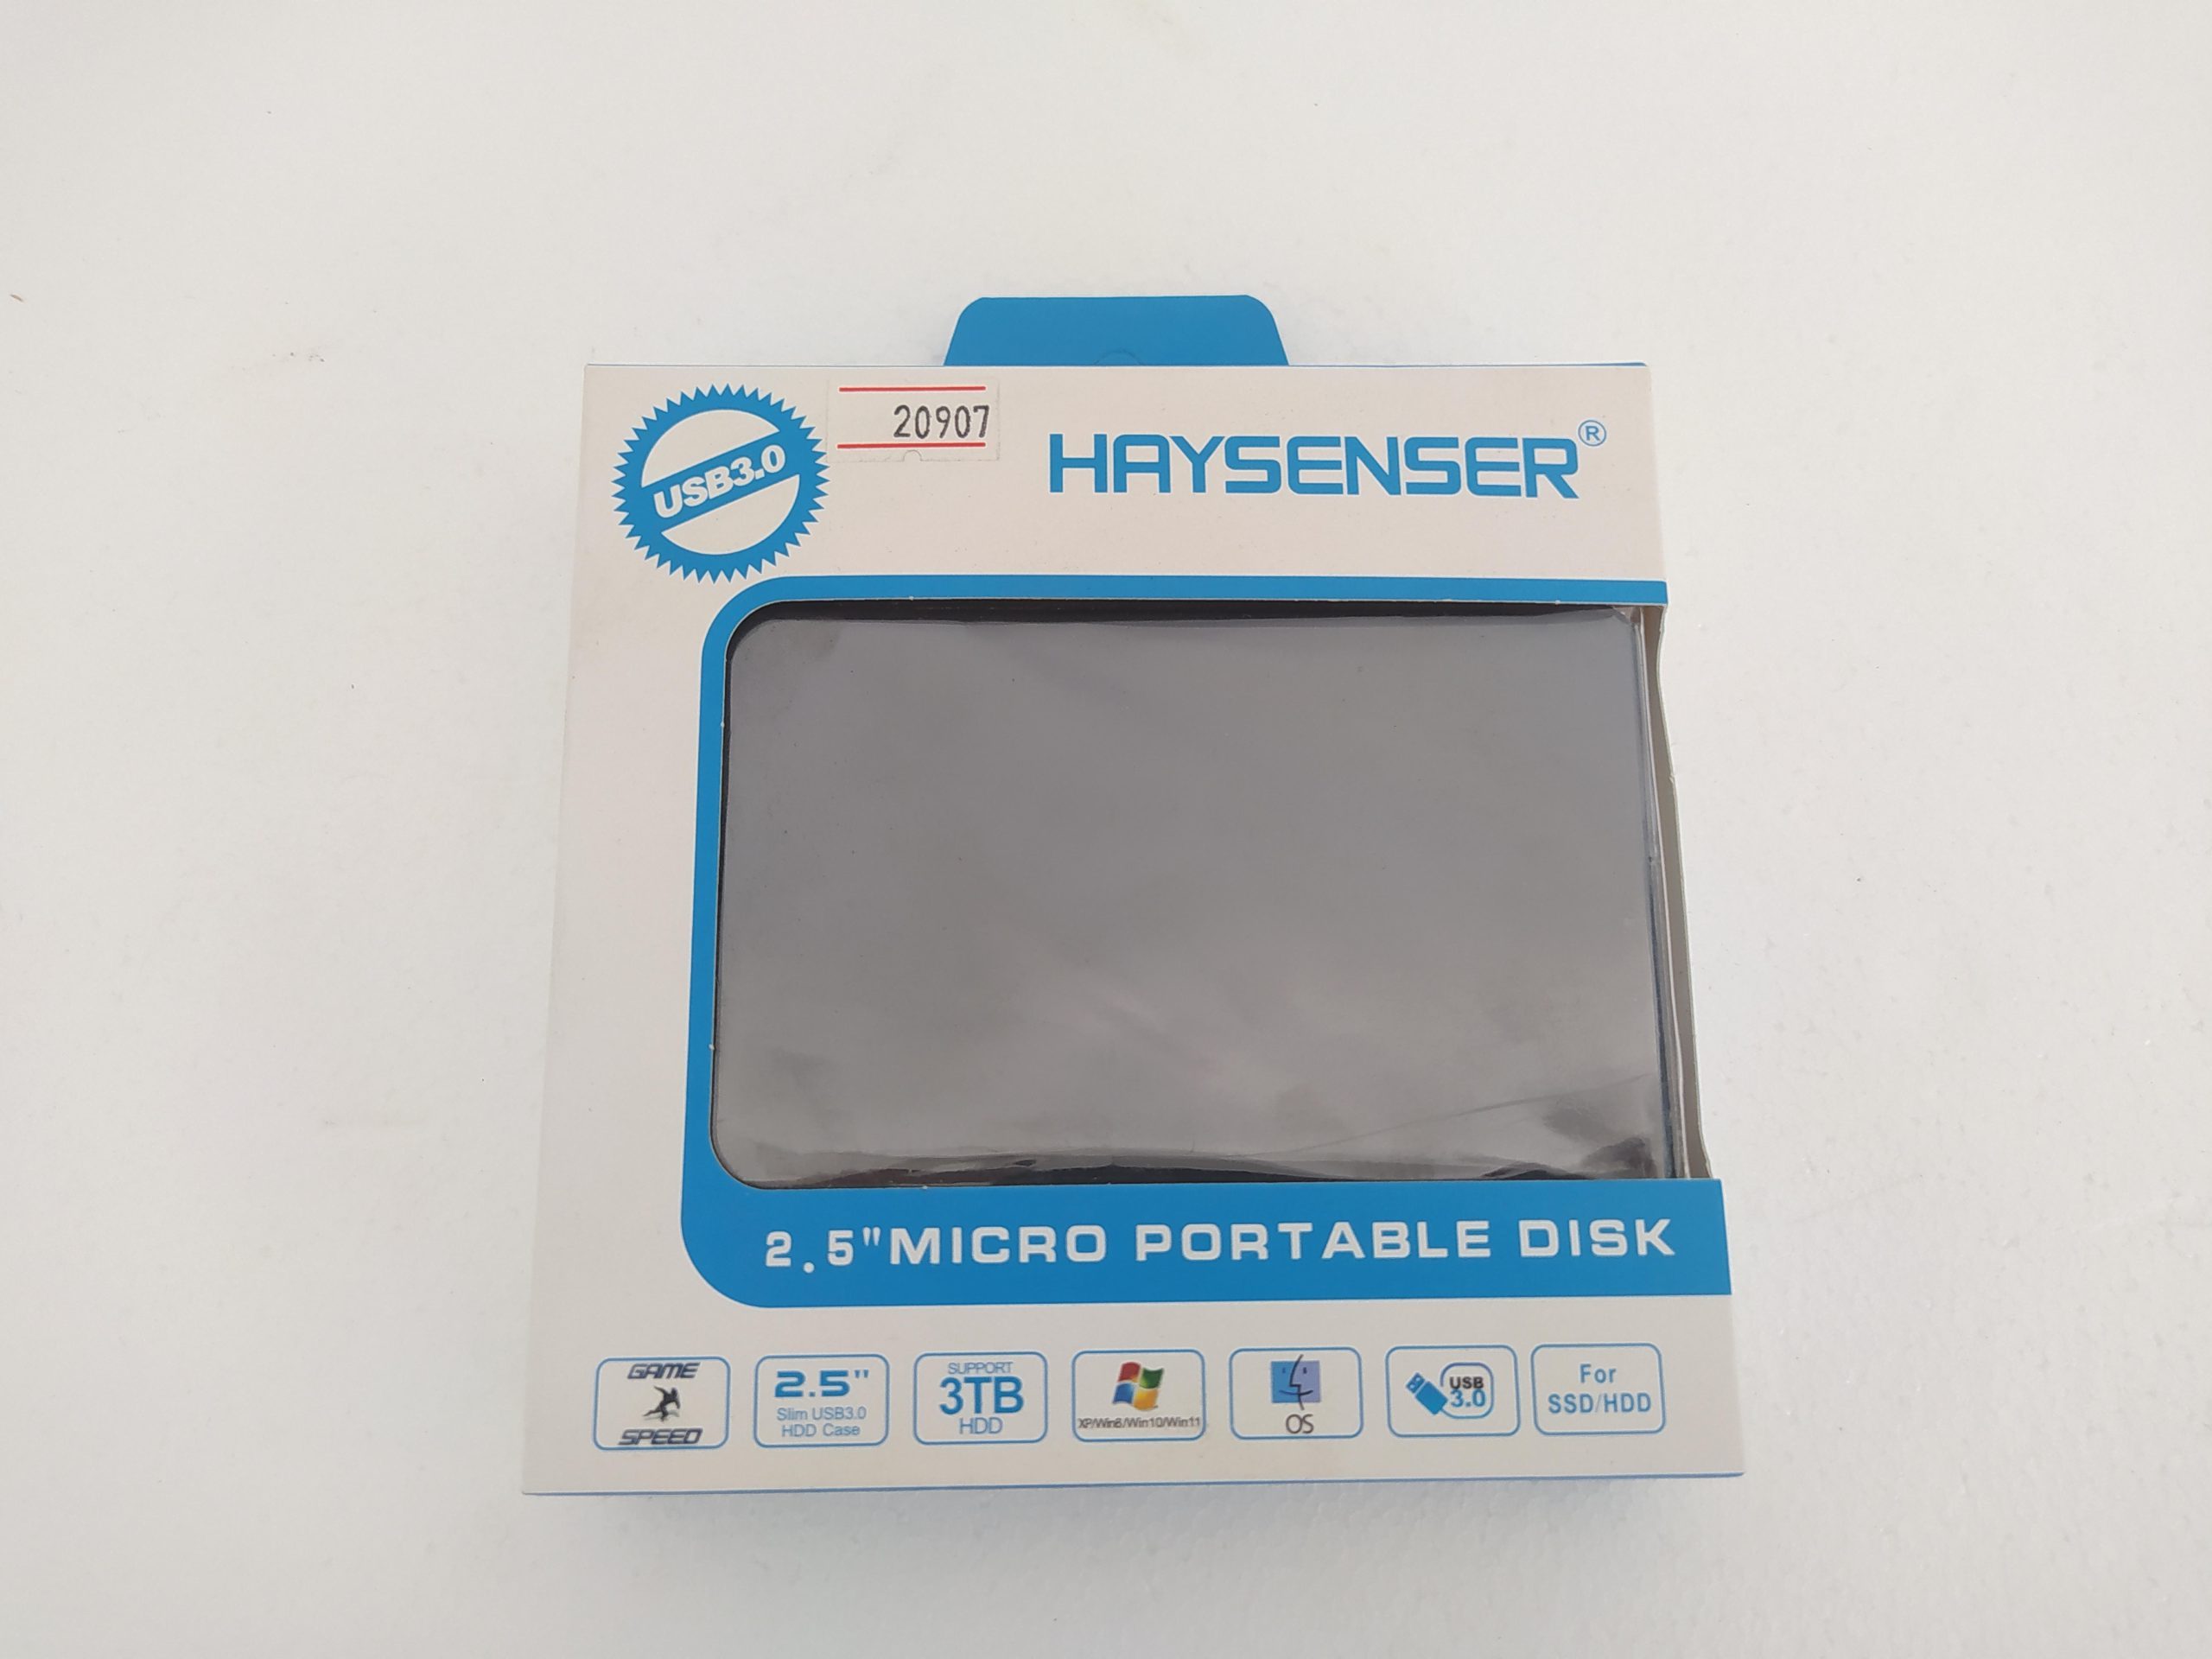 باکس اکسترنال هارد 2.5 اینچی USB 3.0 هایسنسر -HAYSENSER